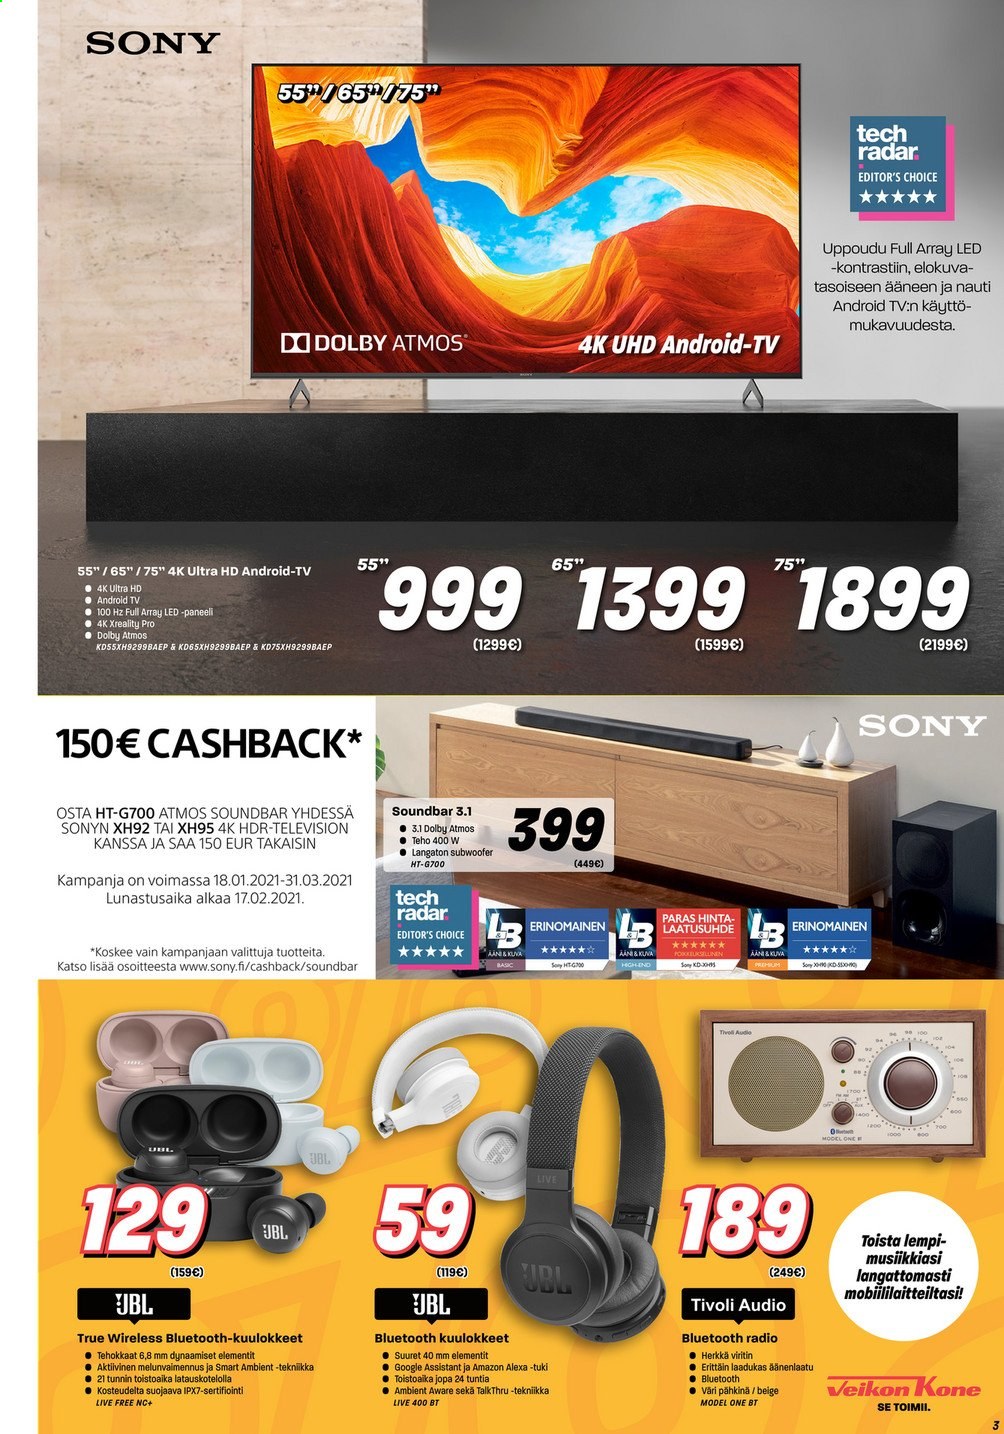 thumbnail - Veikon Kone tarjoukset  - 25.01.2021 - 31.01.2021 - Tarjoustuotteet - Sony, JBL, Android TV, TV, Ultra HD, soundbar, kuulokkeet. Sivu 3.